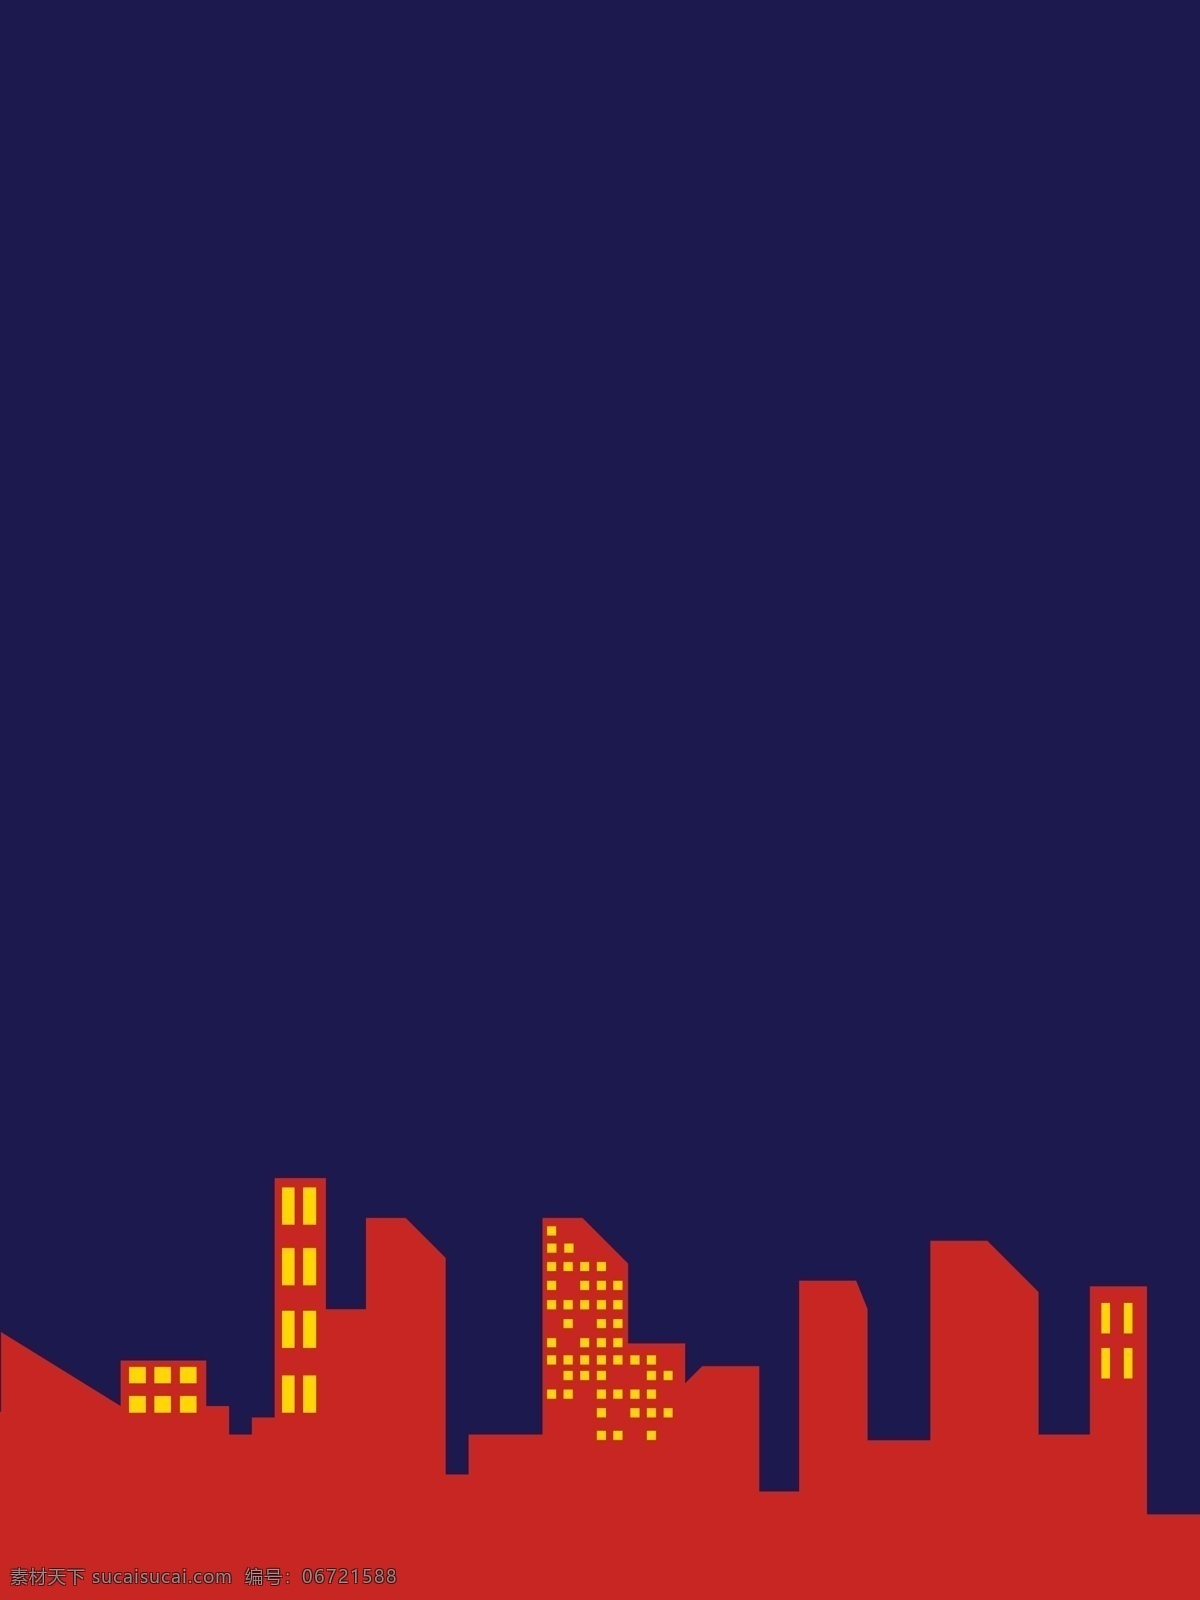 红蓝 科技 建筑 背景 蓝色 城市 背景图 创意 红包背景 广告背景 背景设计 通用背景 促销背景 背景展板图